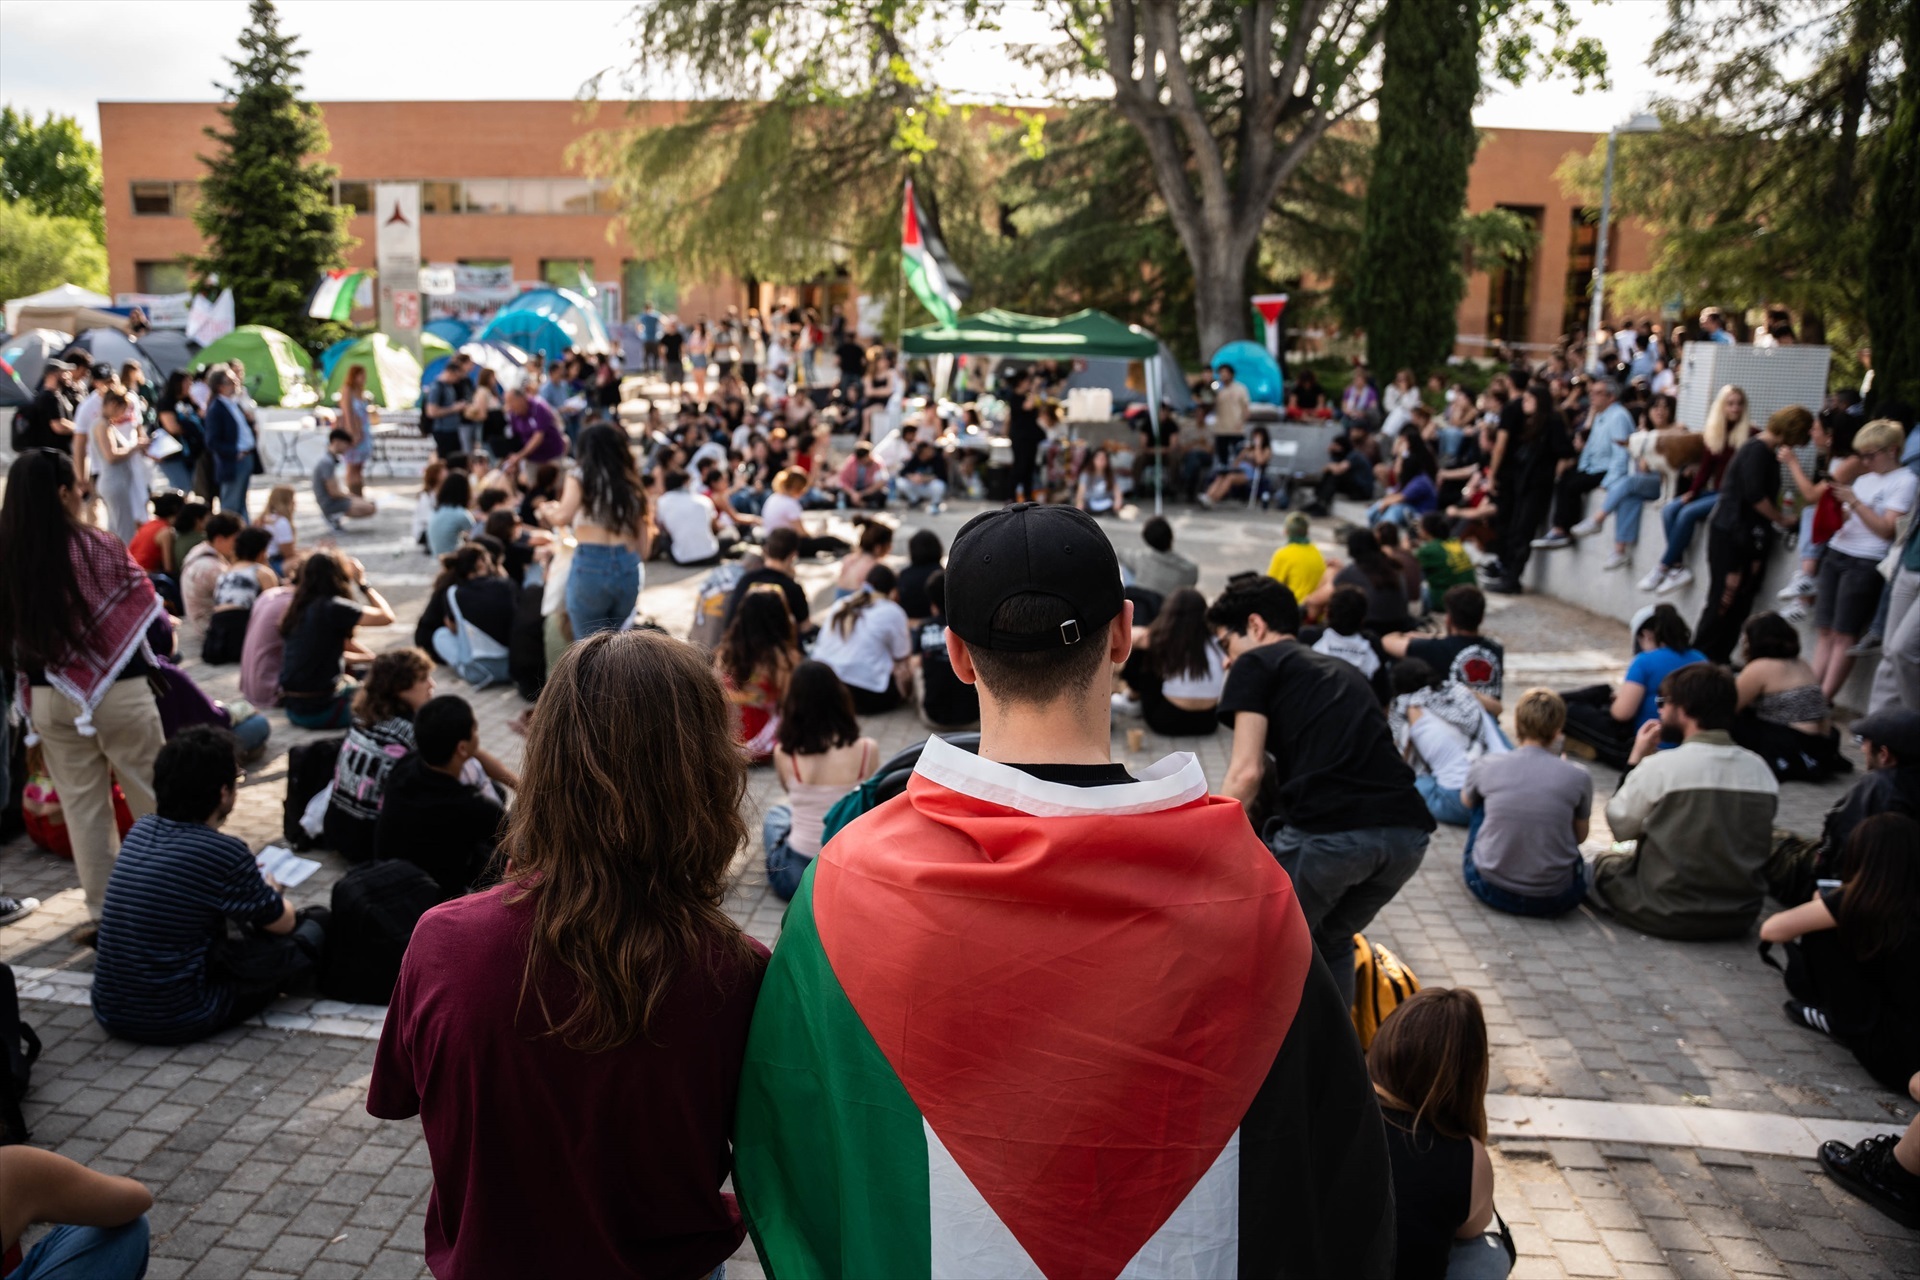 Ambiente "opresivo" contra los judíos en la Universidad española: "Miedo a ir a clase", "insultos" y "escupitajos"